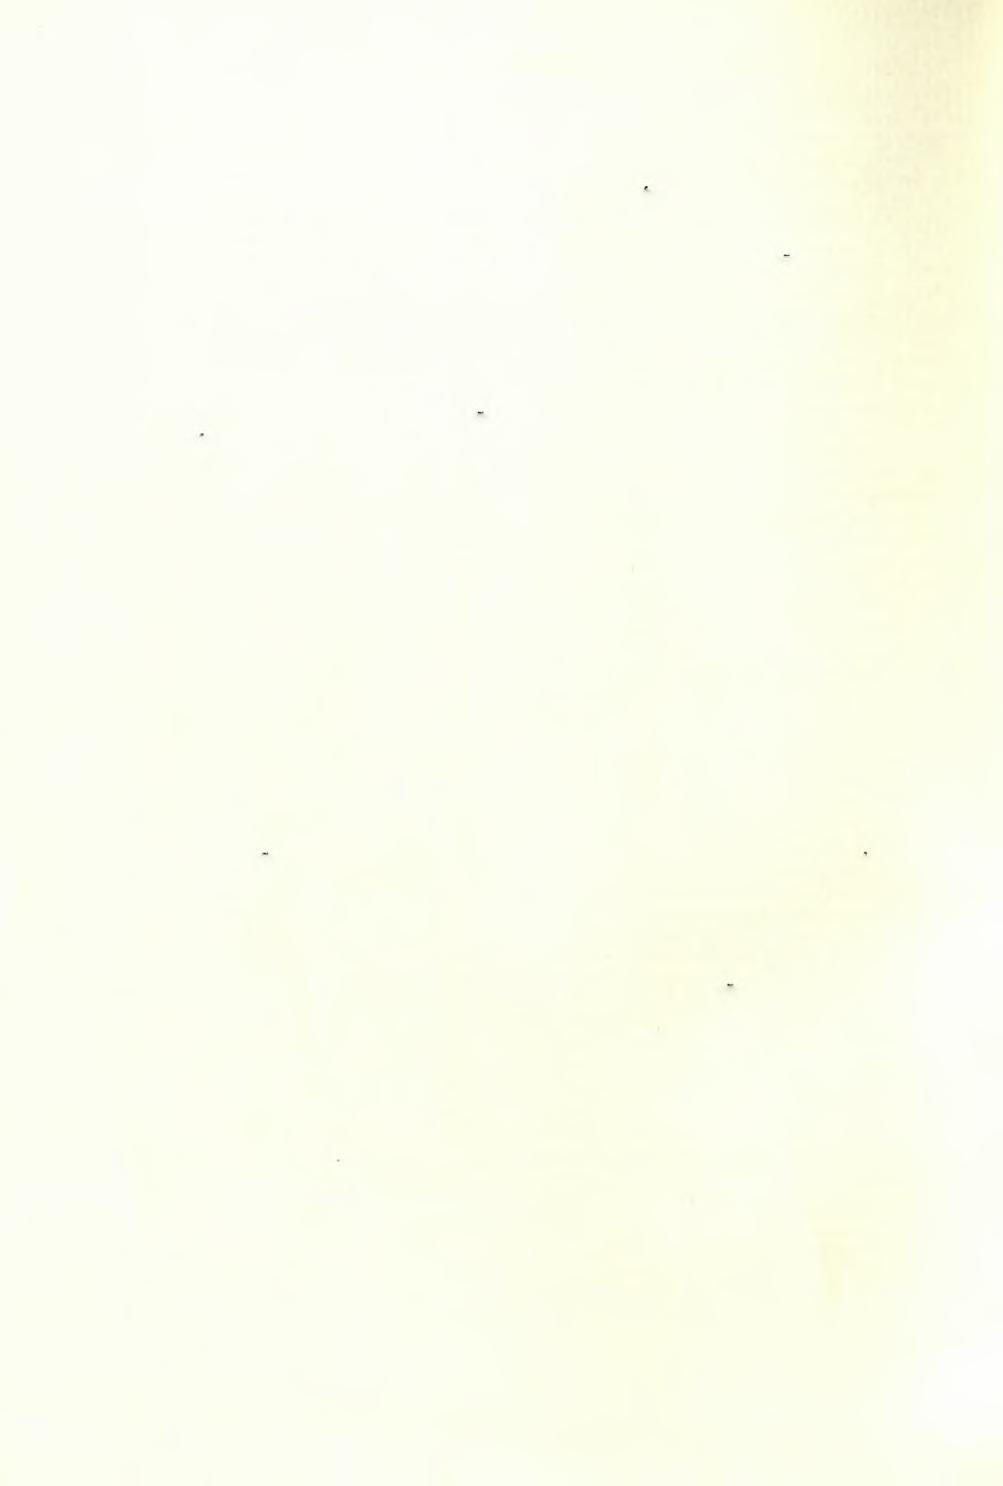 336 ΑΡΧΑΙΟΛΟΓΙΚΟΝ ΔΕΛΤΙΟΝ 19 (1964) : ΧΡΟΝΙΚΑ σποιναν Παπακωνσταντίνου, Κλαίρην Παπαπαύλου, Δώραν Χατζηστέλιου, πτυχιούχους φιλολογίας τοο Πανεπιστημίου Αθηνών (άρχαιολογικοΰ τμήματος) καί Άνναν